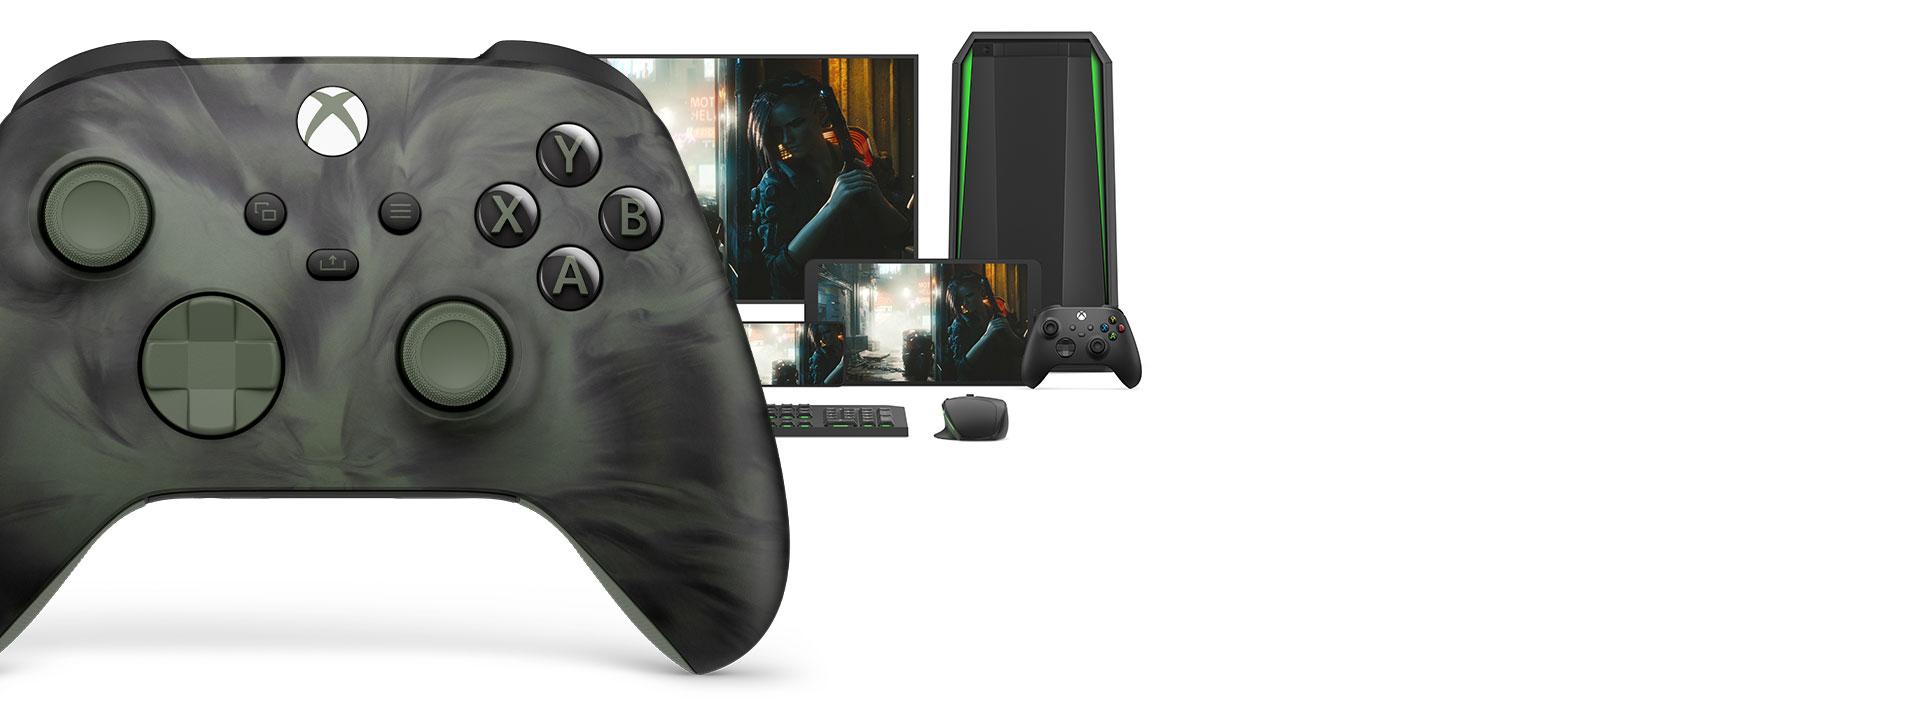 様々なプレイが可能なプラットフォームを背景に、Xbox ワイヤレス コントローラー (ノクターナルベイパー) スペシャル エディションの右側を正面から見たビュー